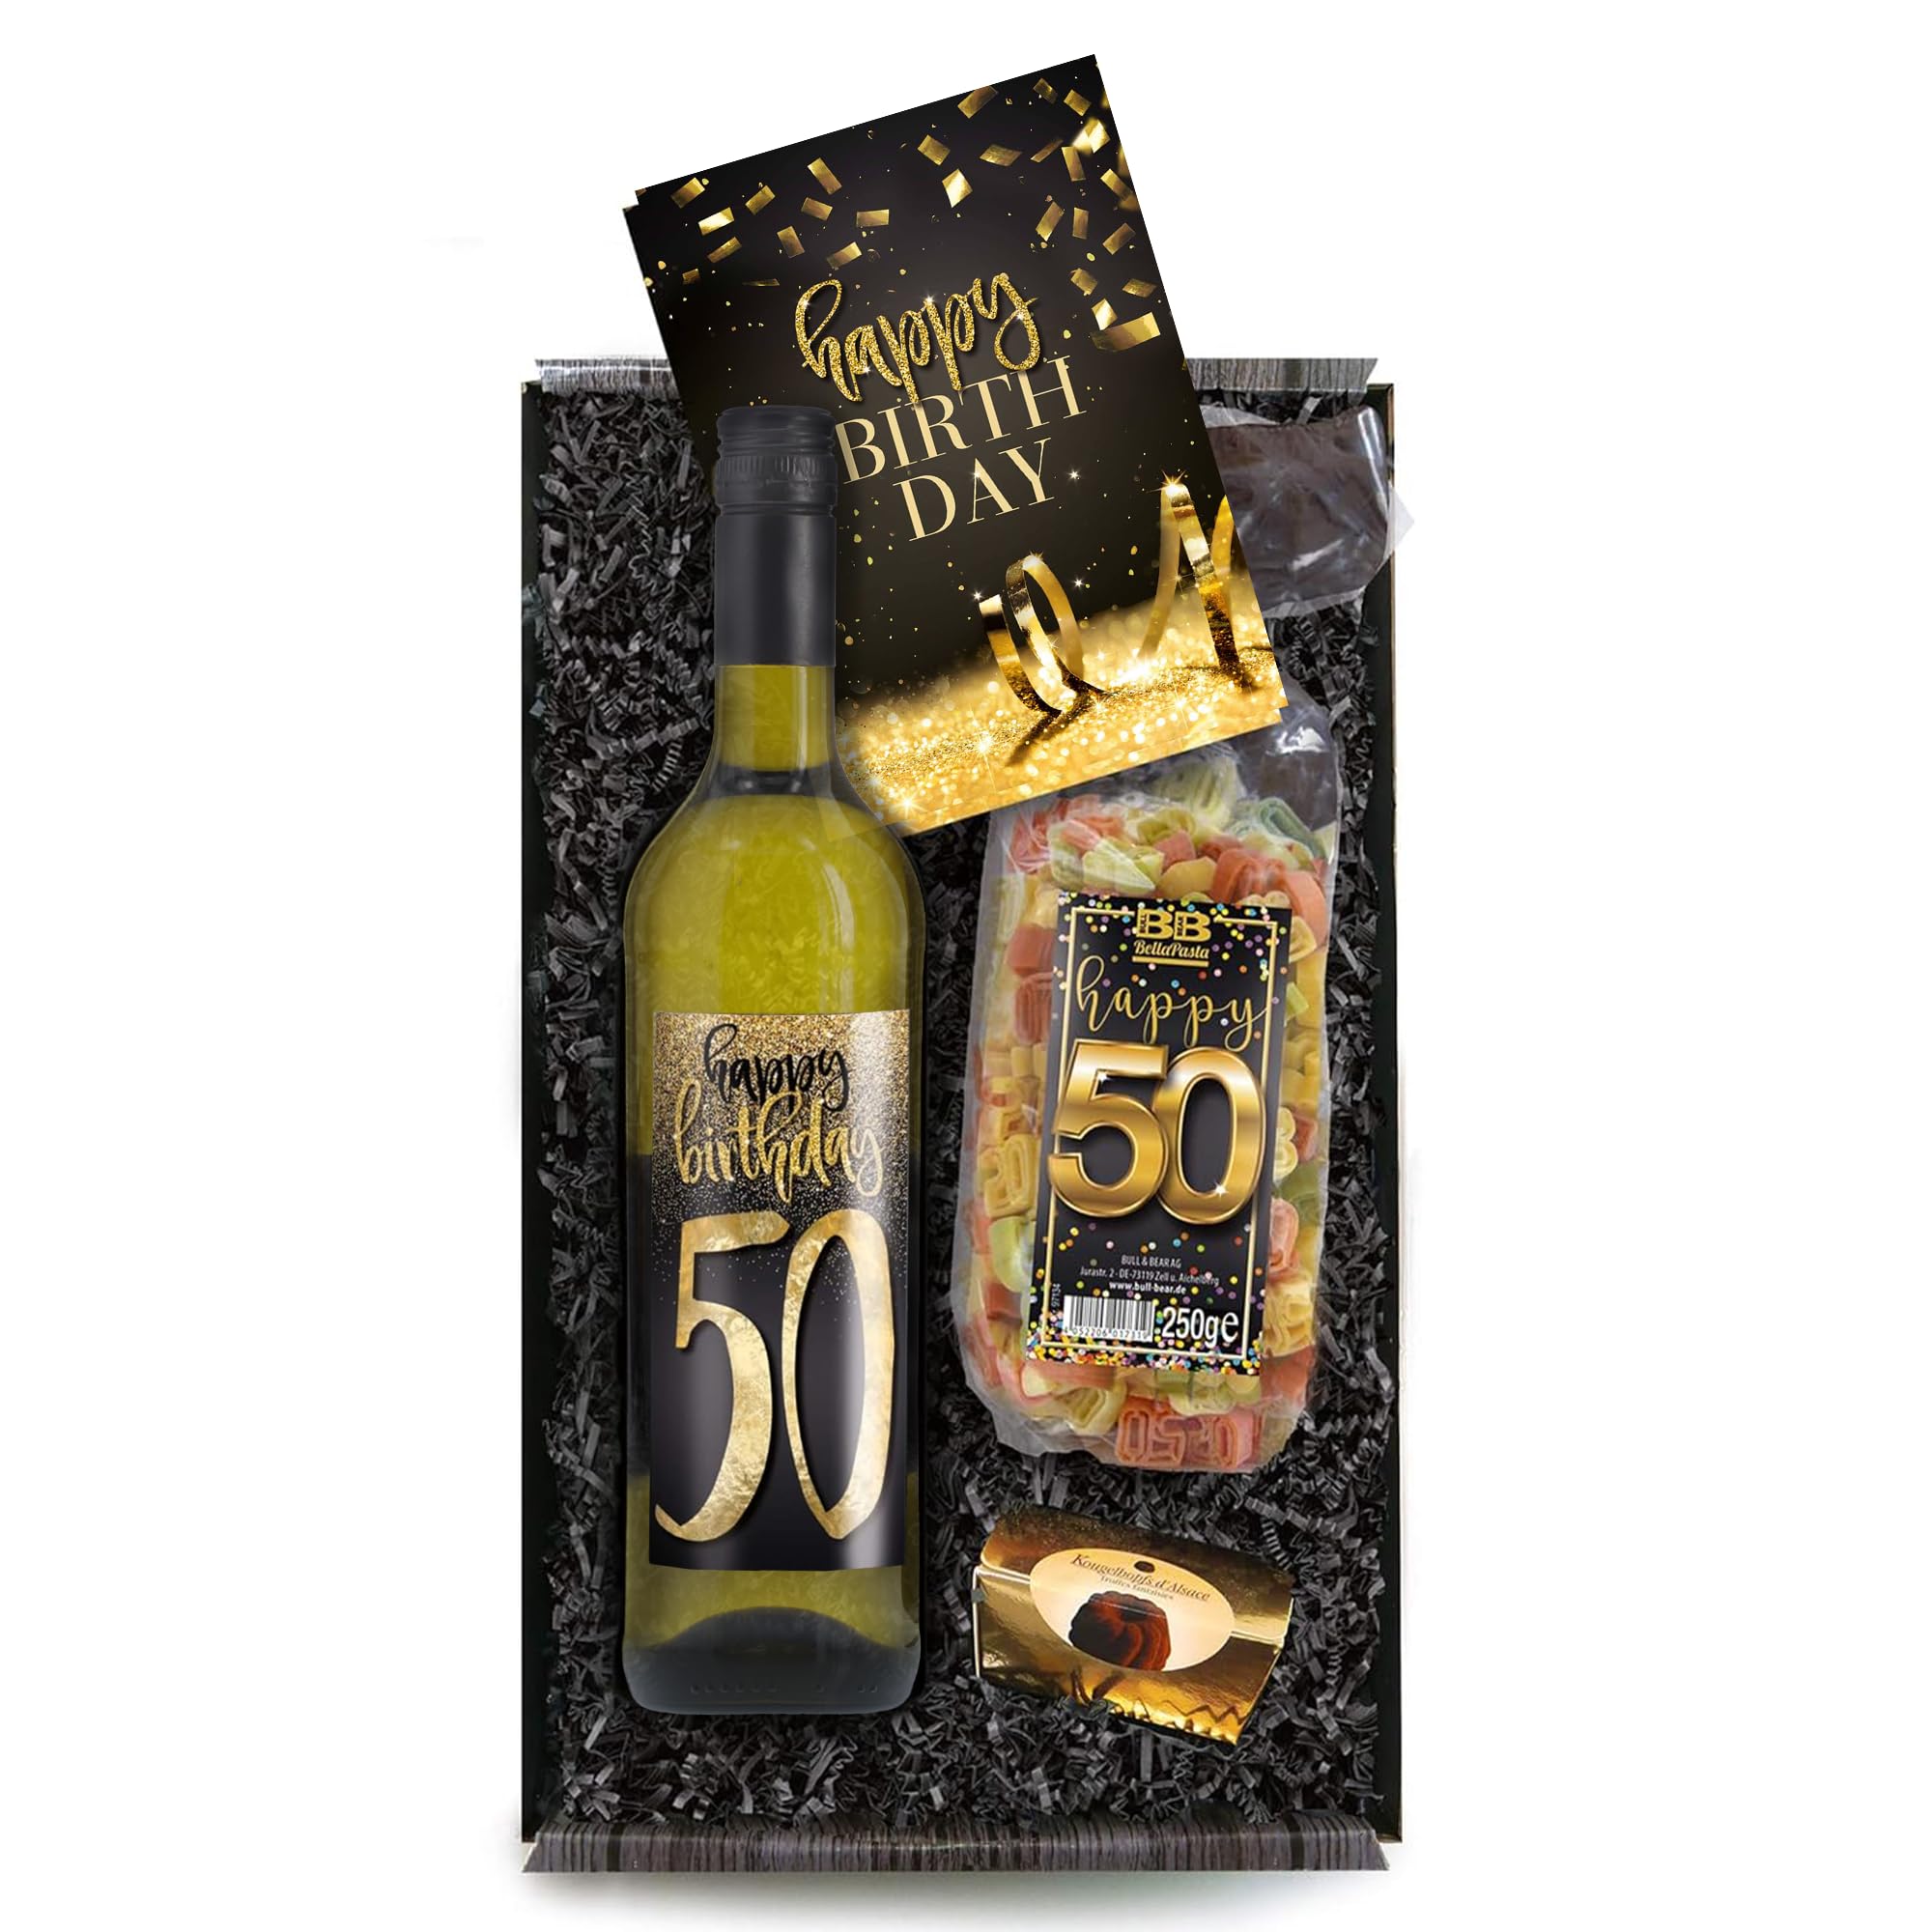 Bull & Bear Geschenkbox "Happy Birthday 50", Set mit Weisswein, Nudeln und Geburtstagskarte, Geschenk zum 50. Geburtstag